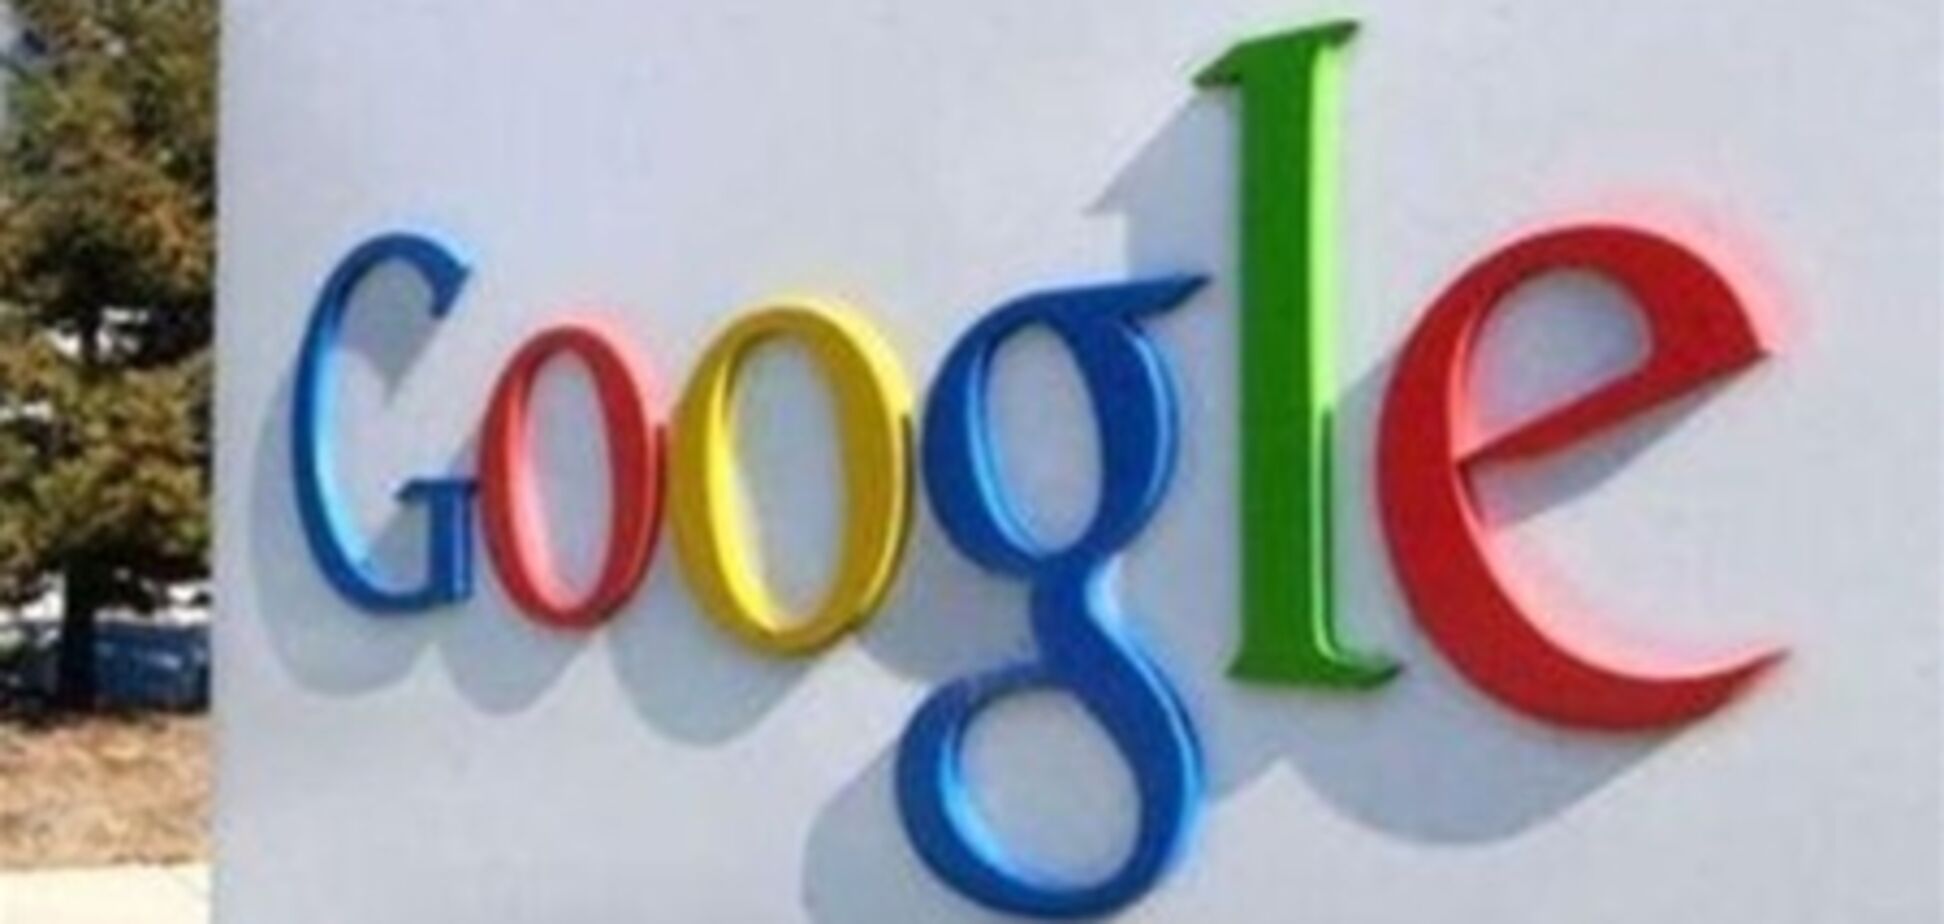 Google готовится купить Waze за $1,3 млрд